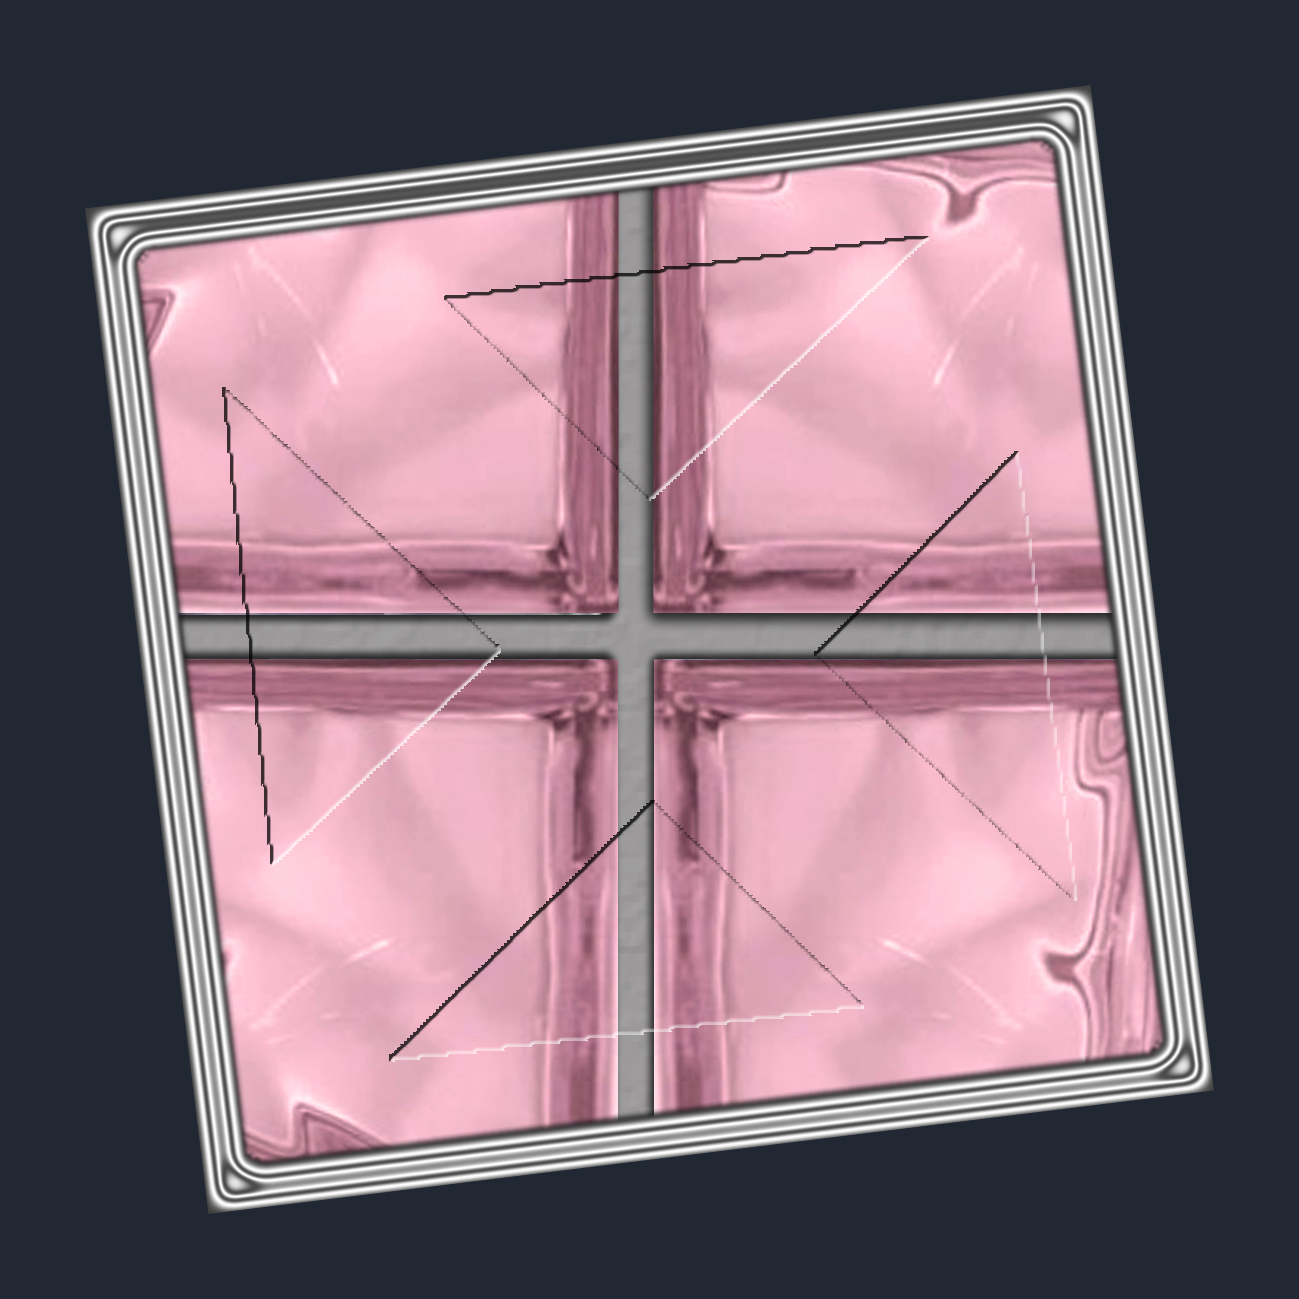 ROSA - růžové skleněné tvárnice luxfery - sortiment...